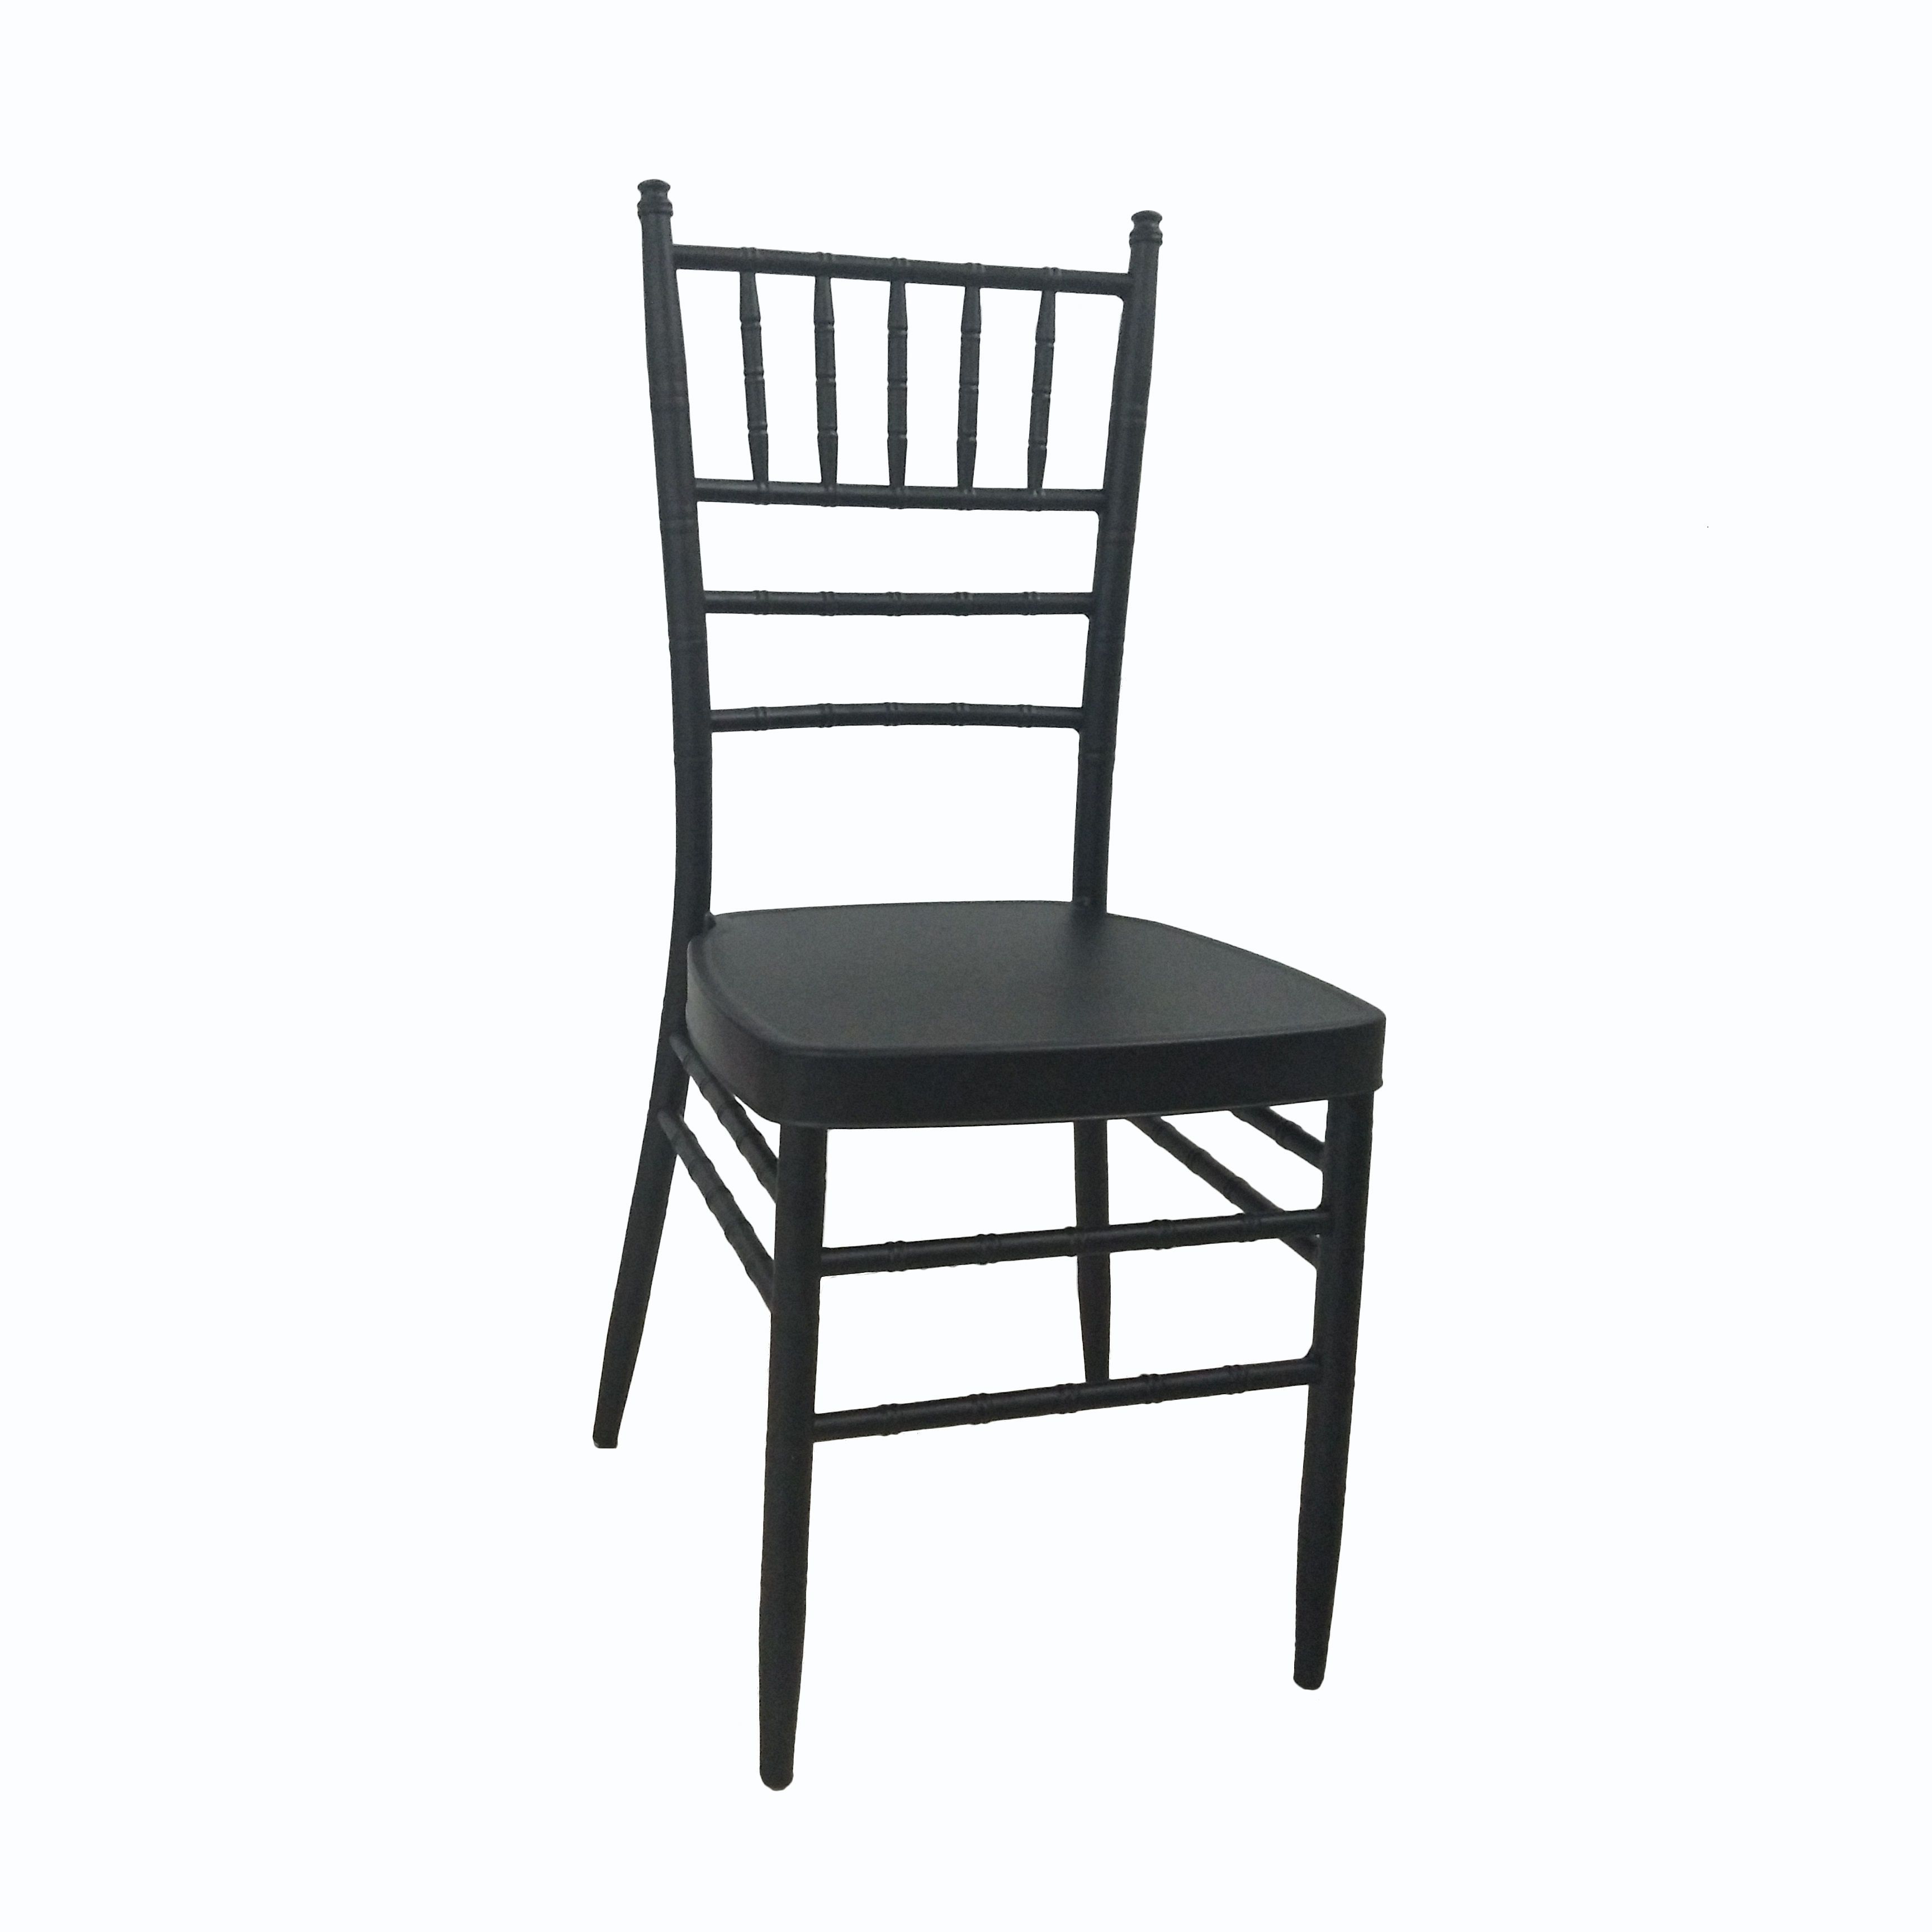 Siyah sandalye sandalye yastığı yok